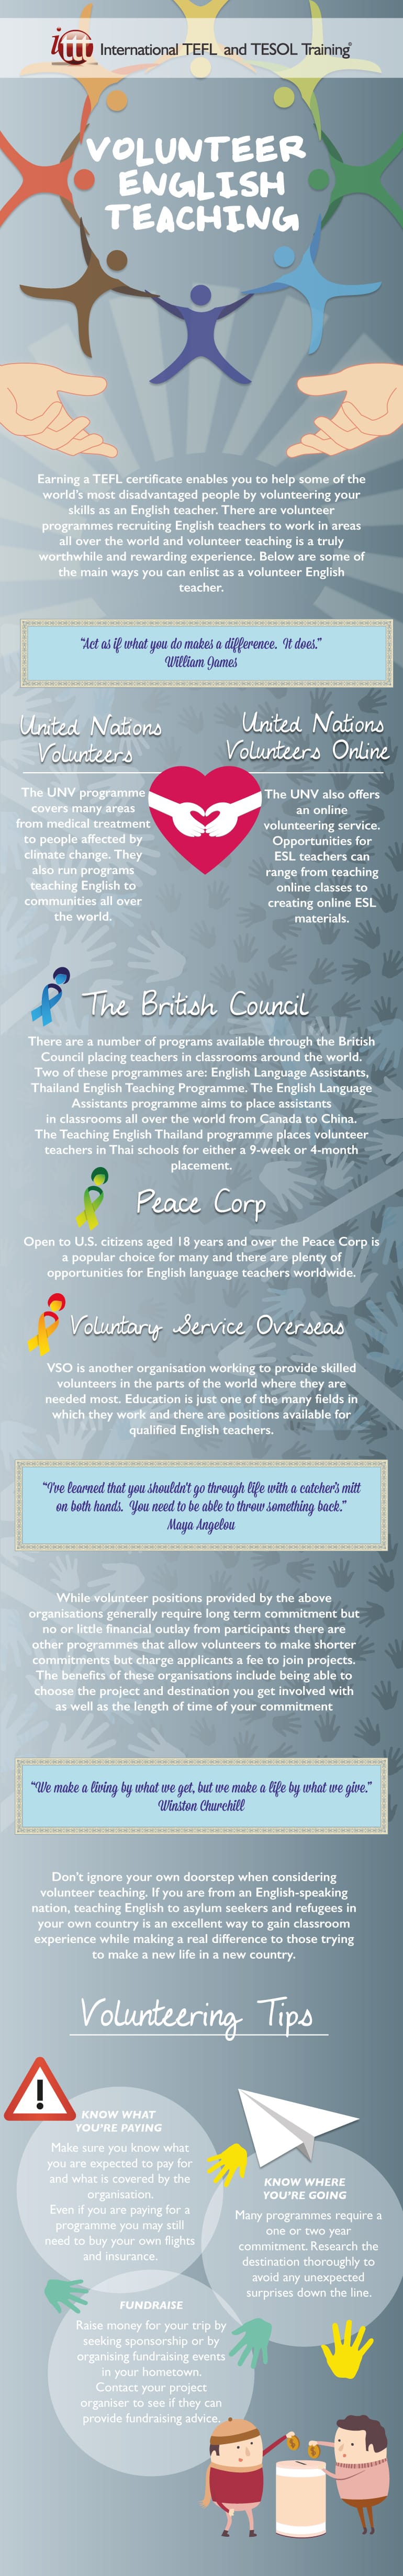 Infographic Volunteer English Teaching